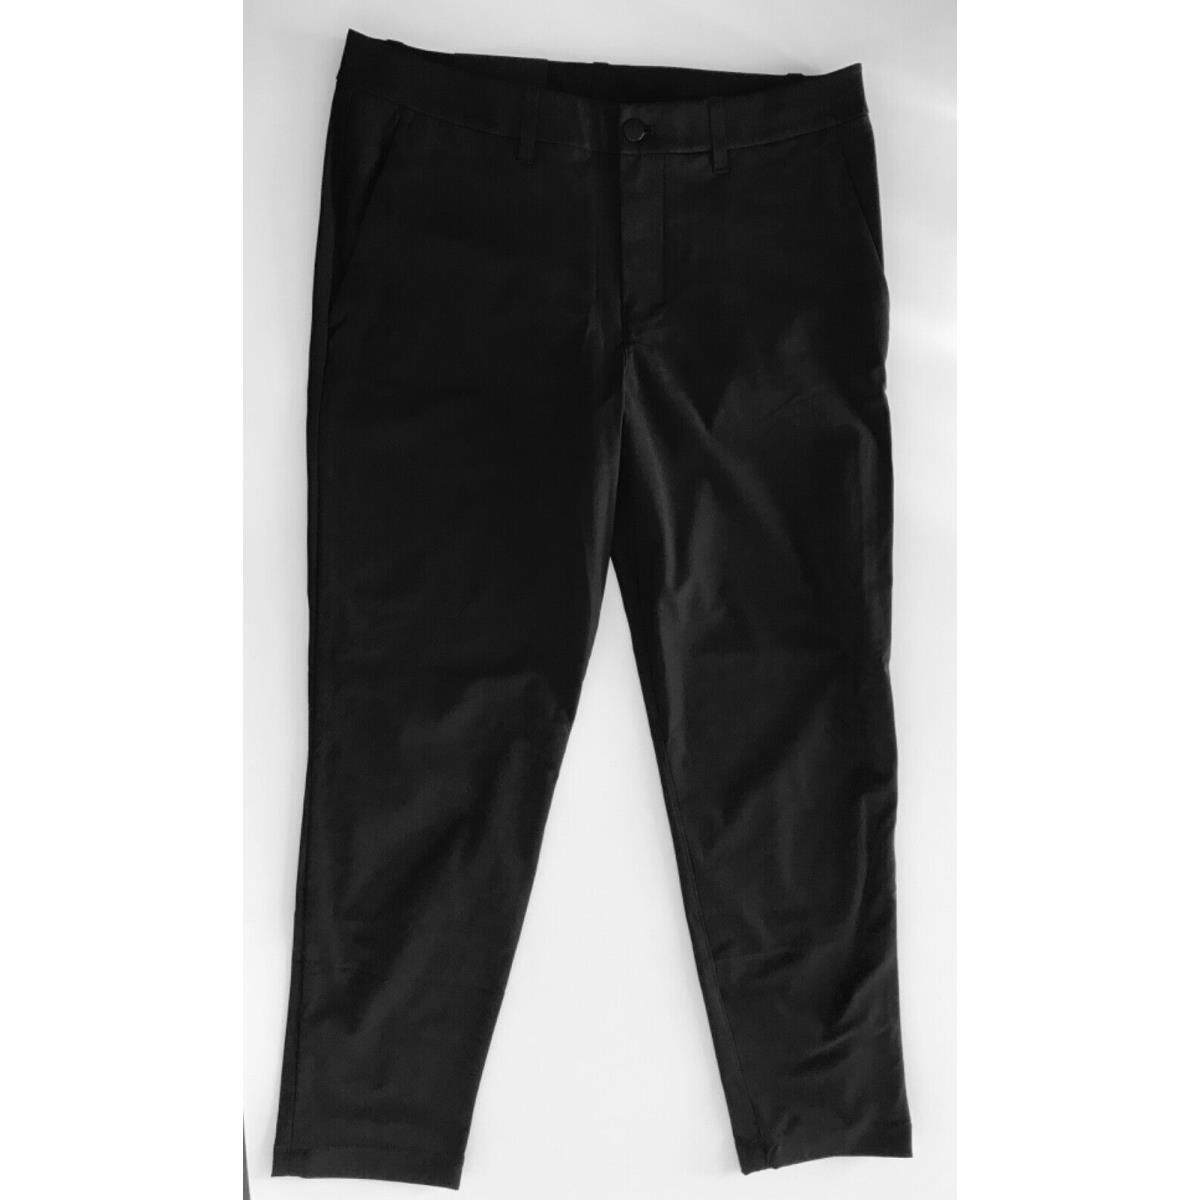 Lululemon Men s Abc Trouser Pant Slim Fit LM5AQYS Black Size 32 x 30